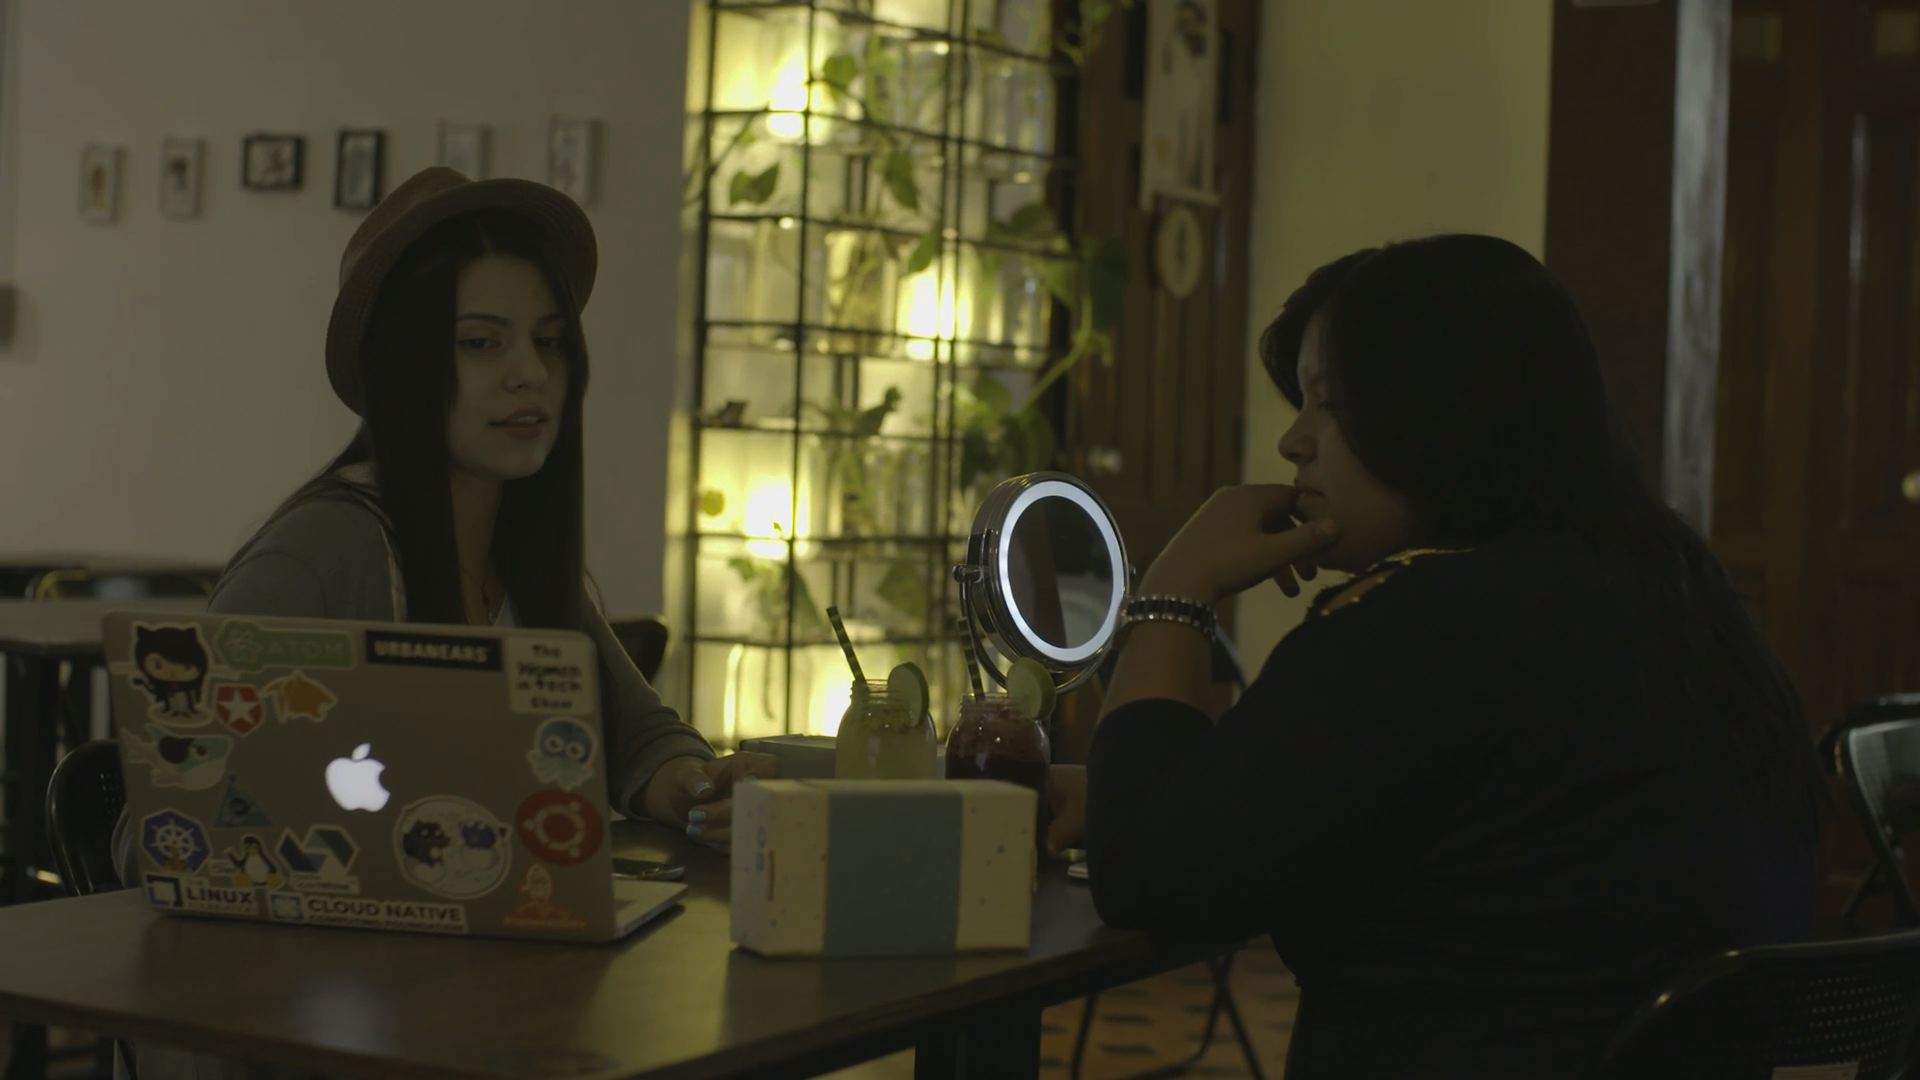 Así nos conectamos, el documental sobre la transformación digital en Colombia